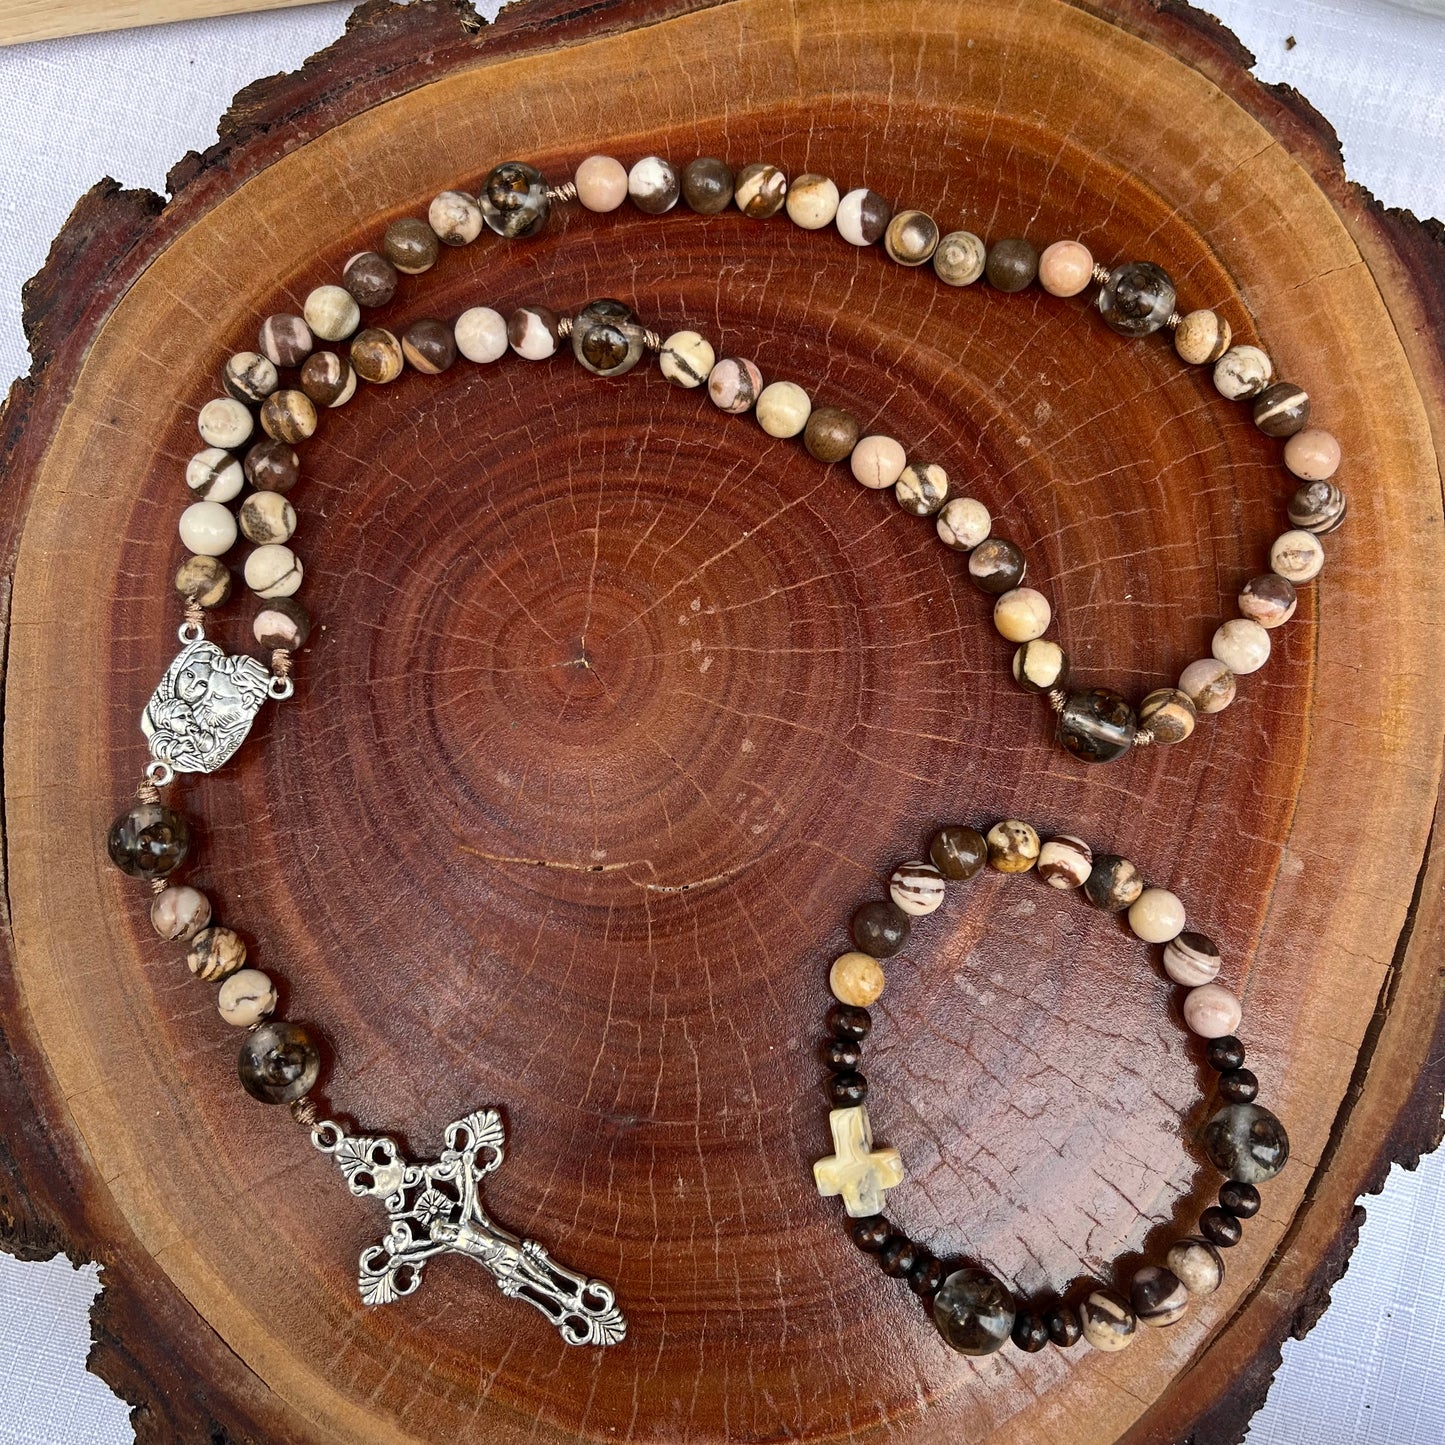 Men’s Rosary Bracelet inspired by St Joseph - Australian Flower Series